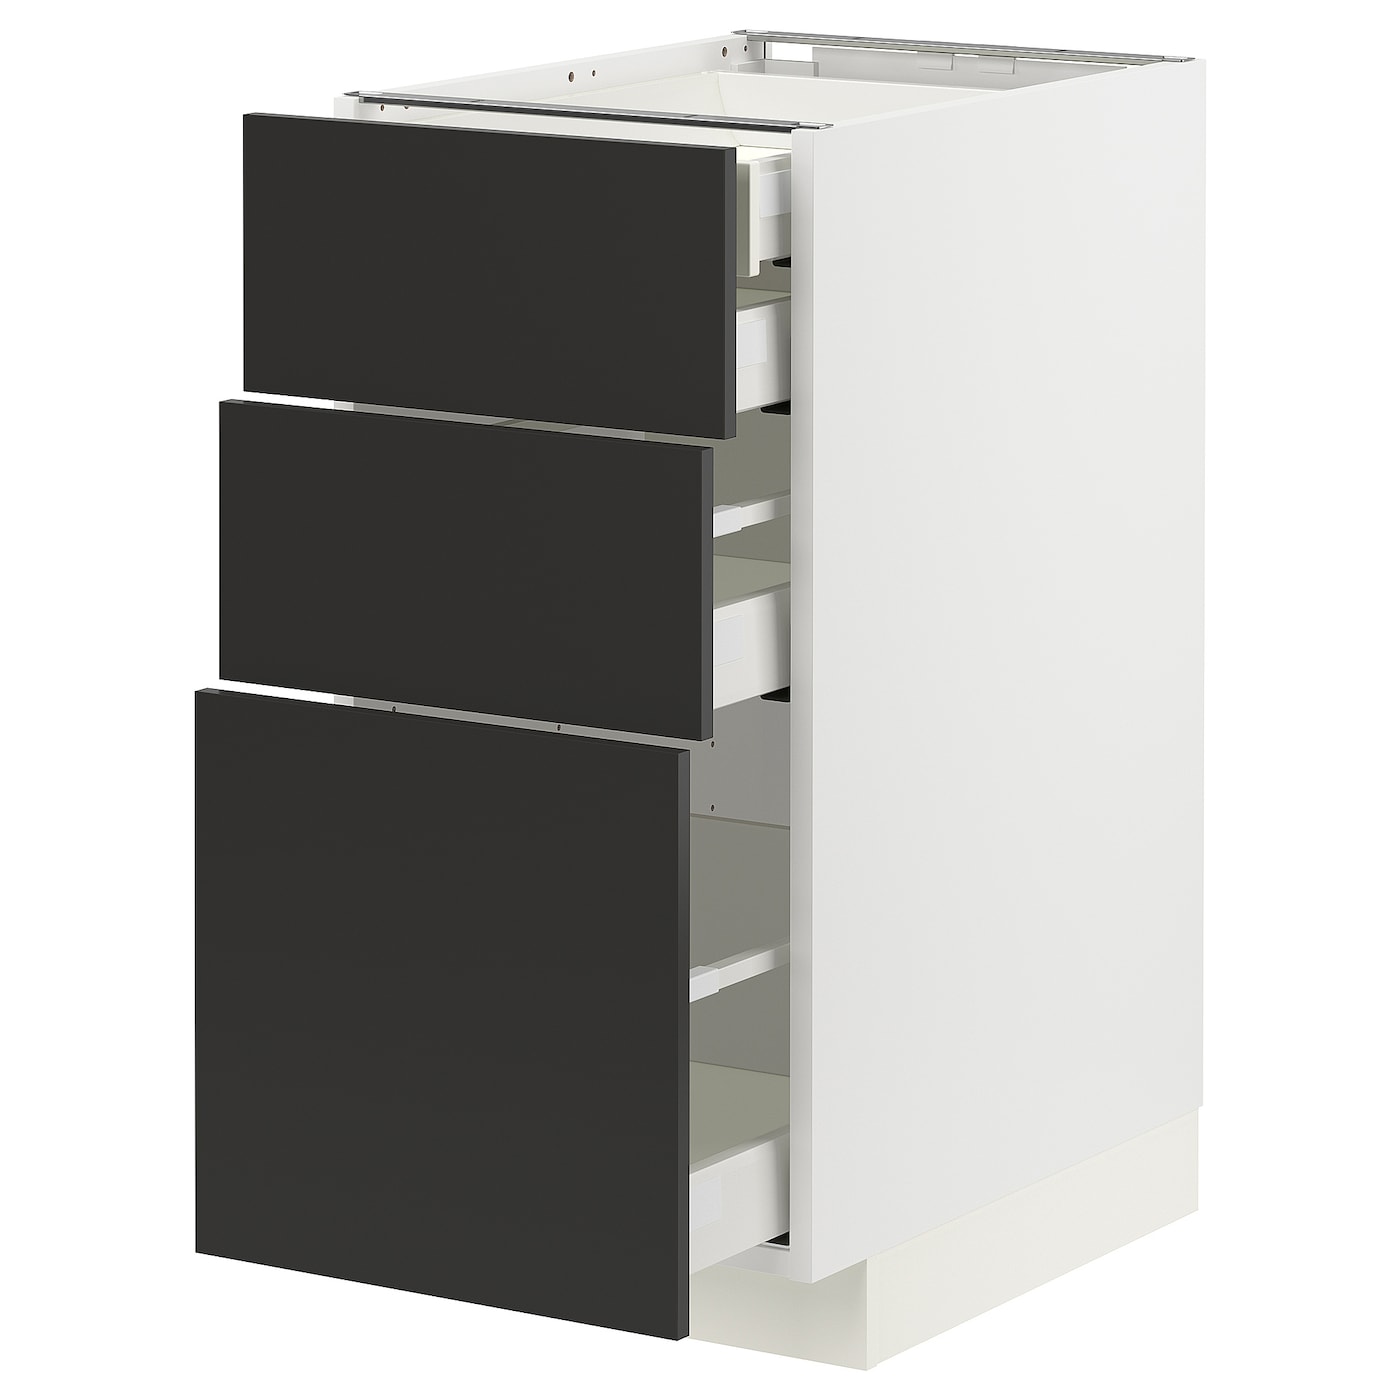 Напольный шкаф  - IKEA METOD MAXIMERA, 88x61,6x40см, белый/черный, МЕТОД МАКСИМЕРА ИКЕА